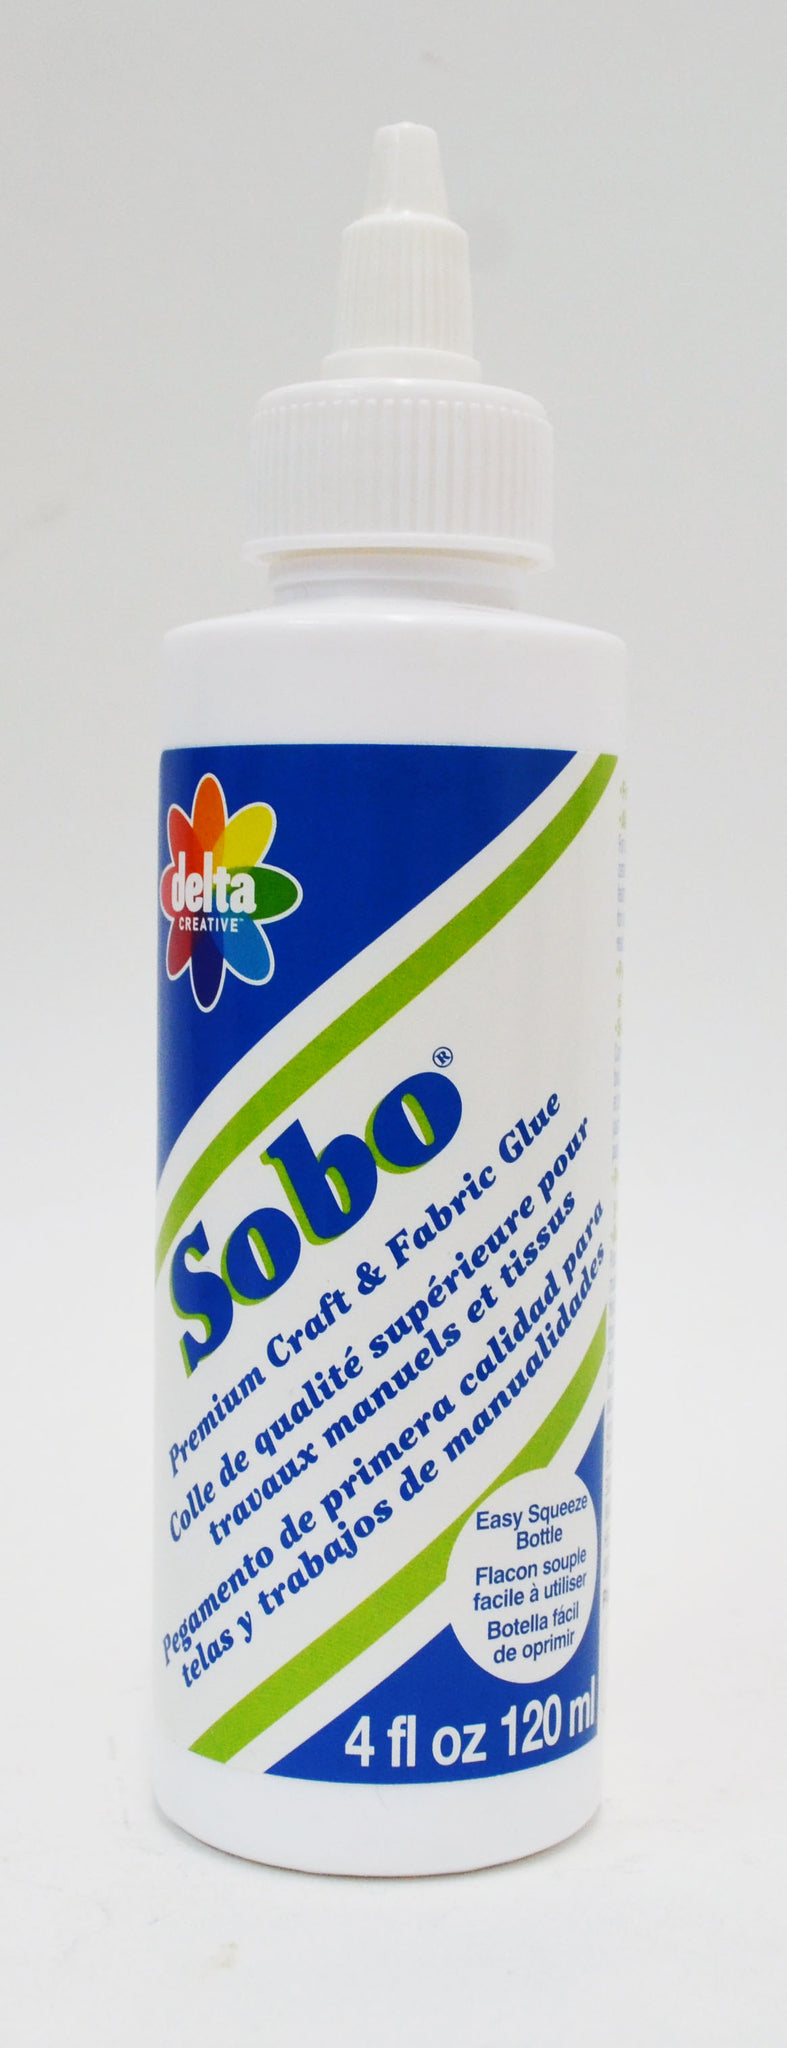 Sobo - Premium Craft and Fabric Glue